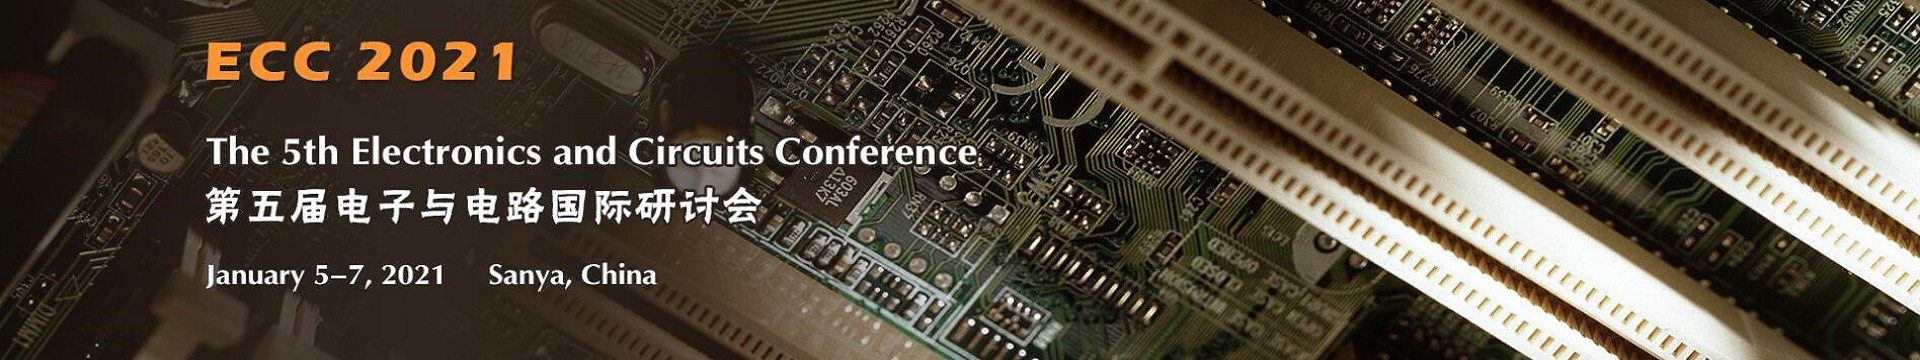 第五届电子与电路国际研讨会(ECC 2021)